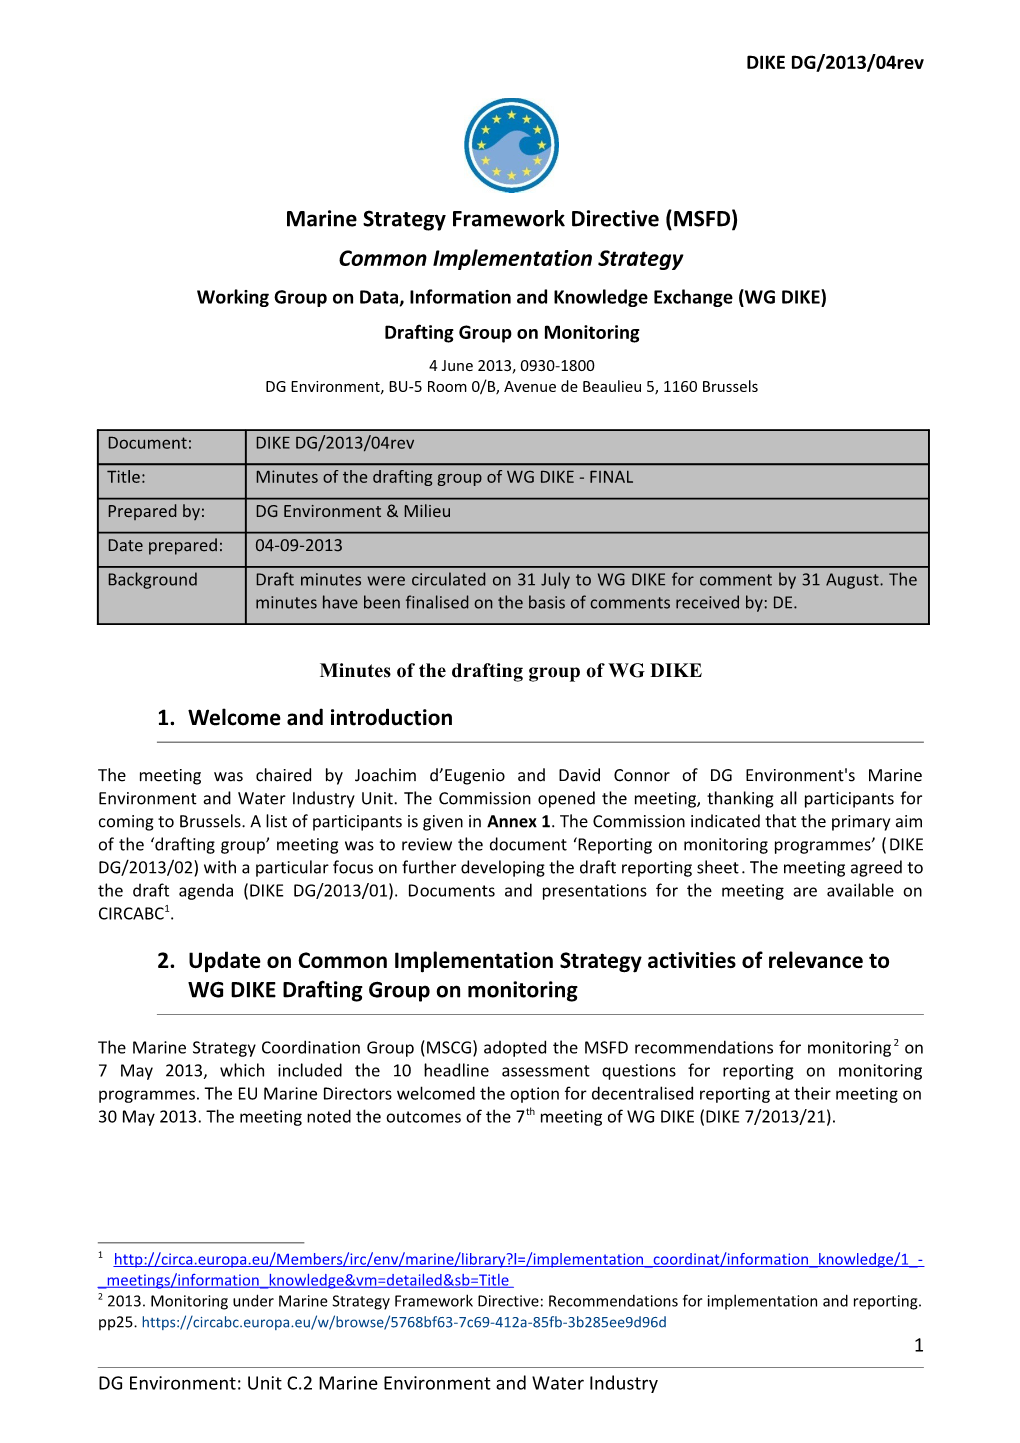 WG DIKE Drafting Group - Minutes of 4 June Meeting